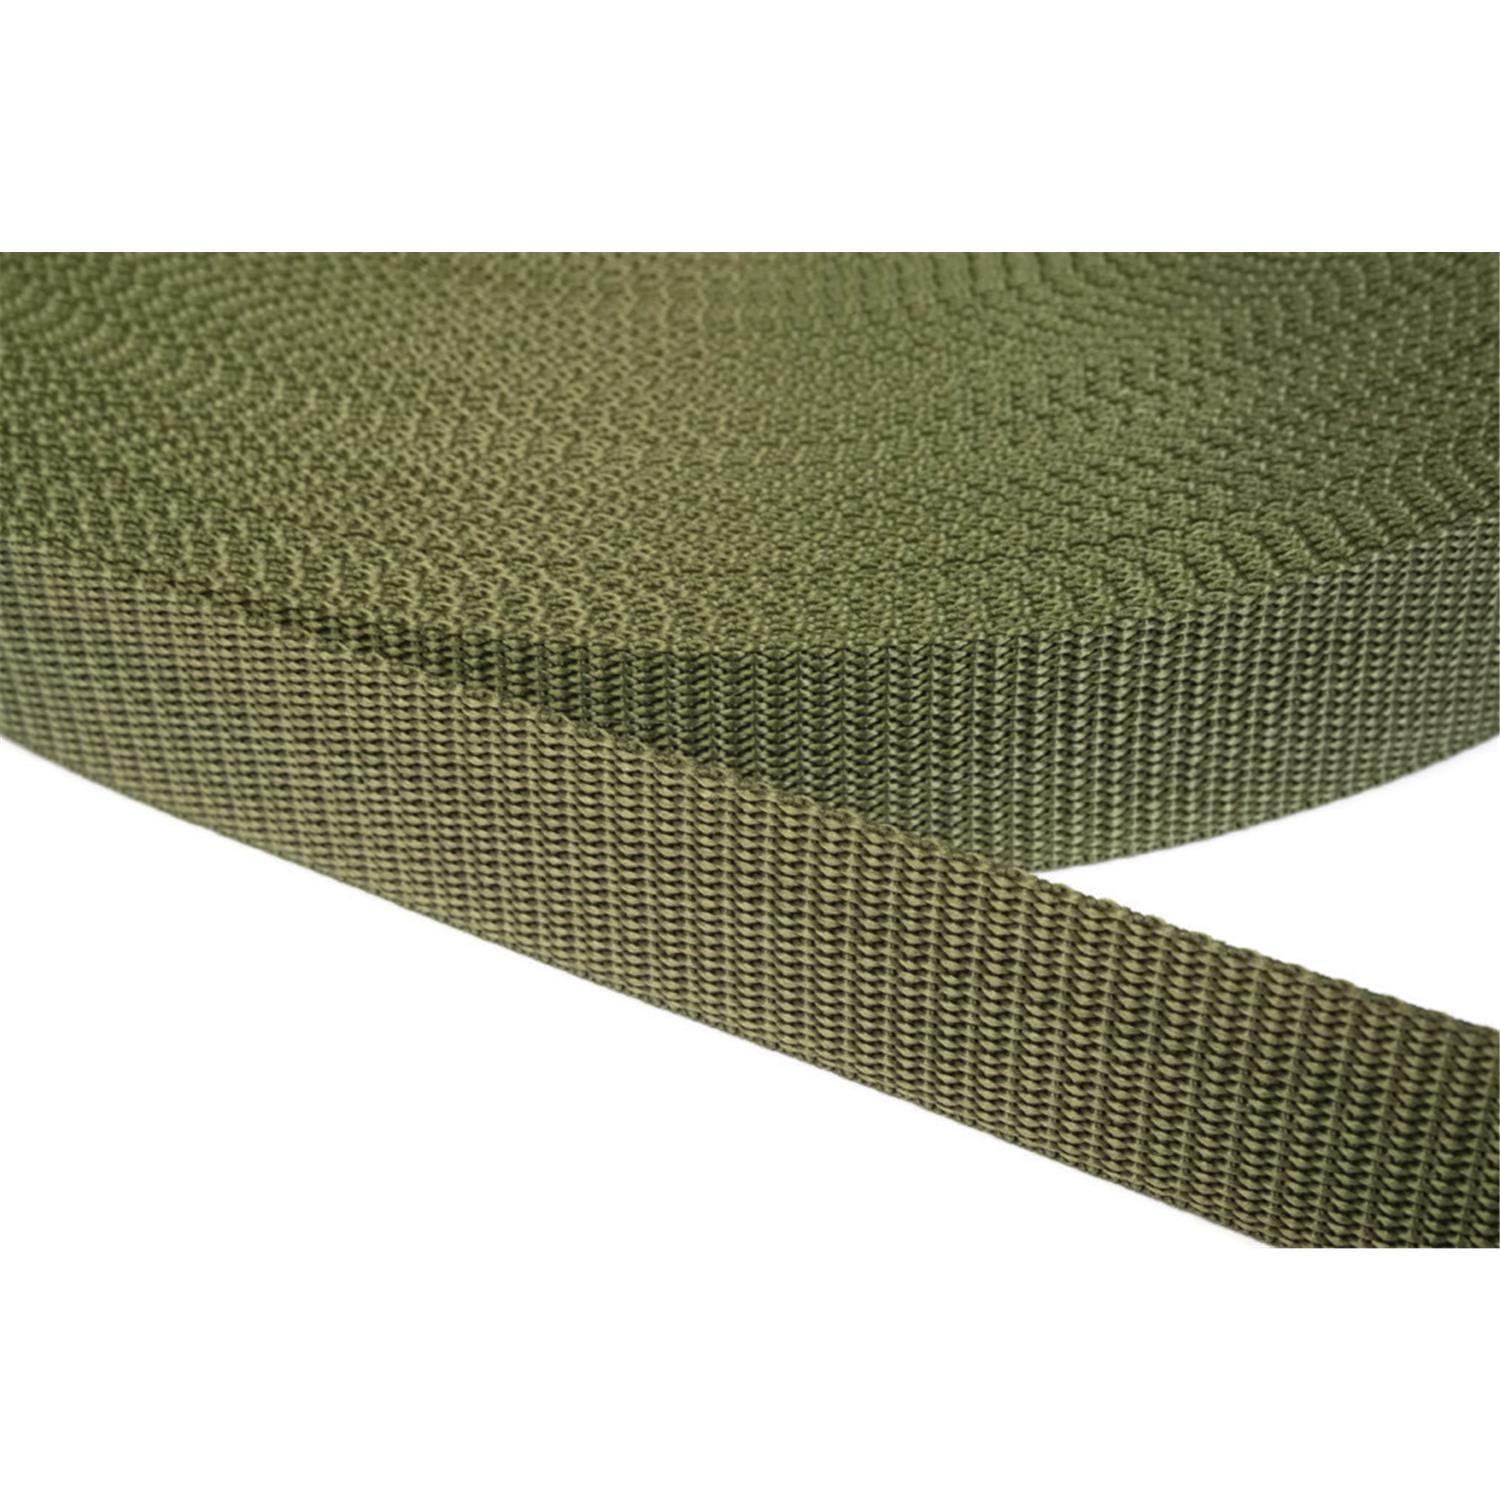 Gurtband 20mm breit aus Polypropylen in 41 Farben 36 - oliv 06 Meter